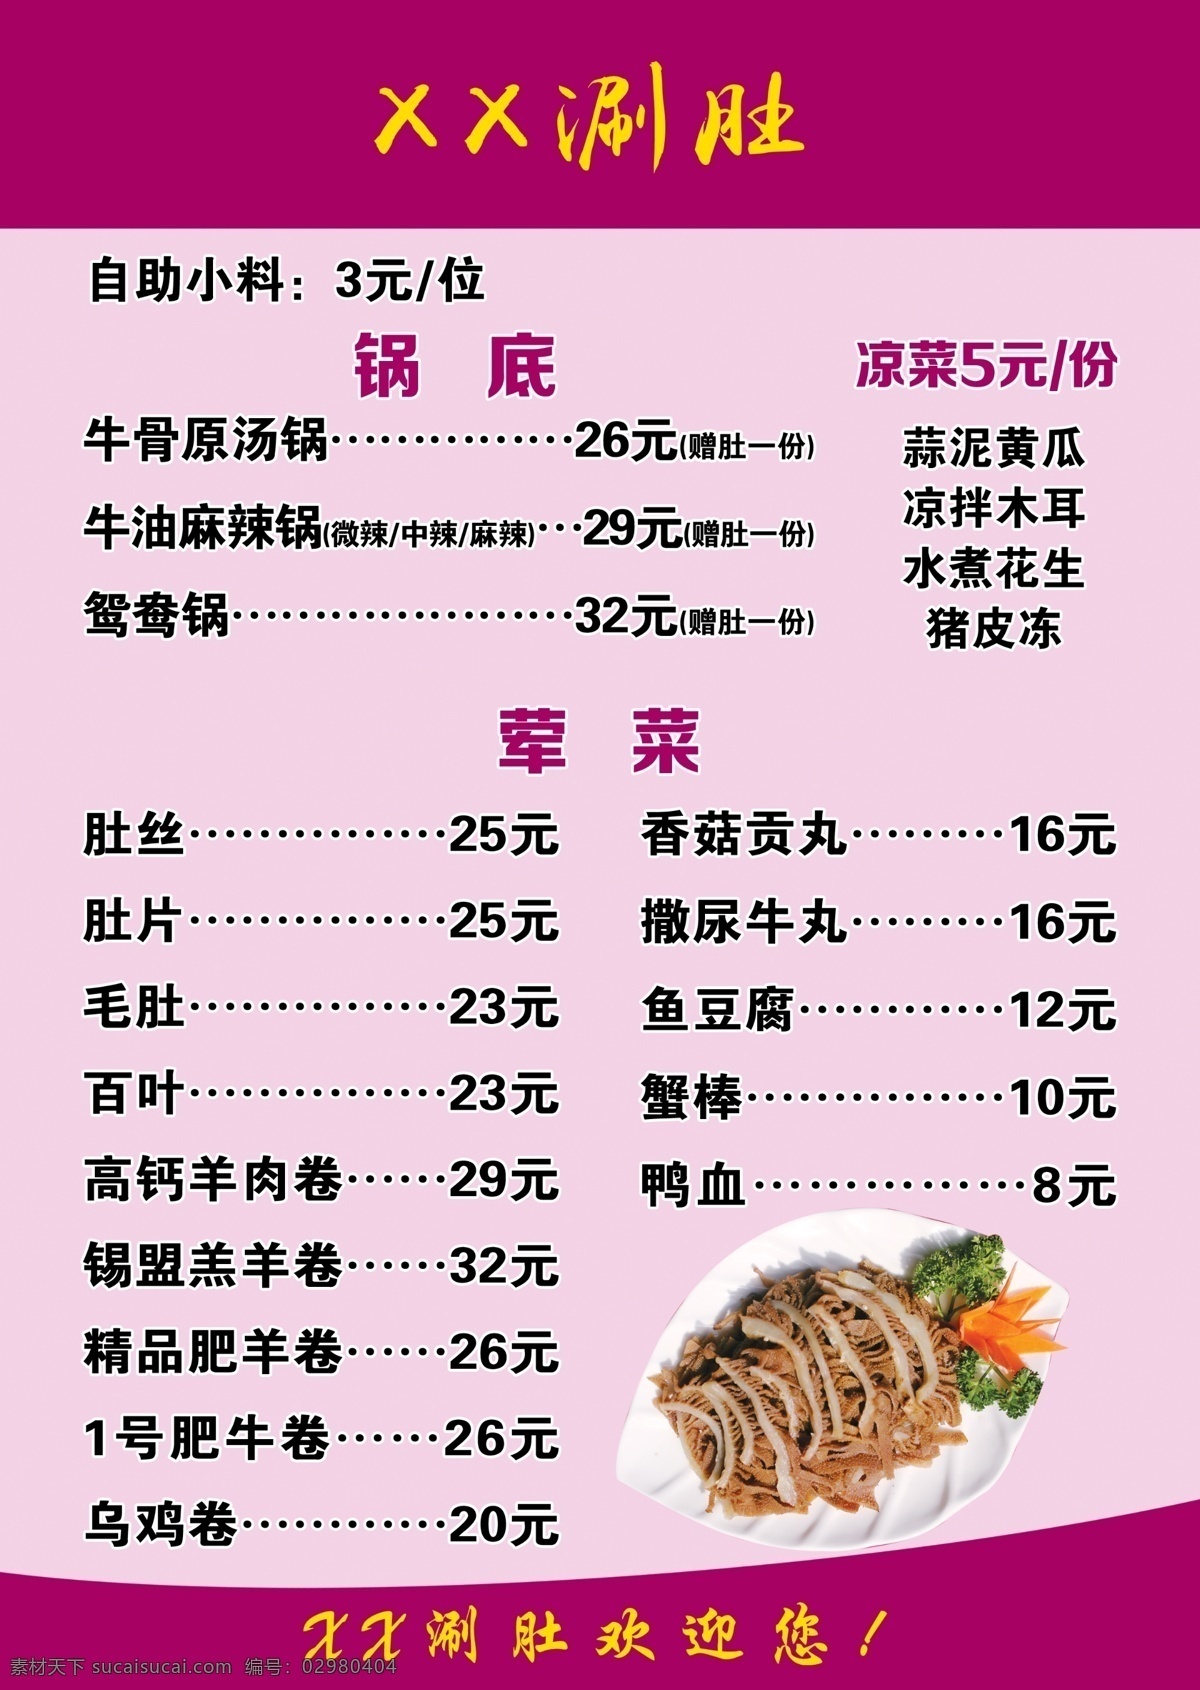 a4 涮 肚 菜谱 菜单 涮肚 价格单 海报 宣传 菜单菜谱